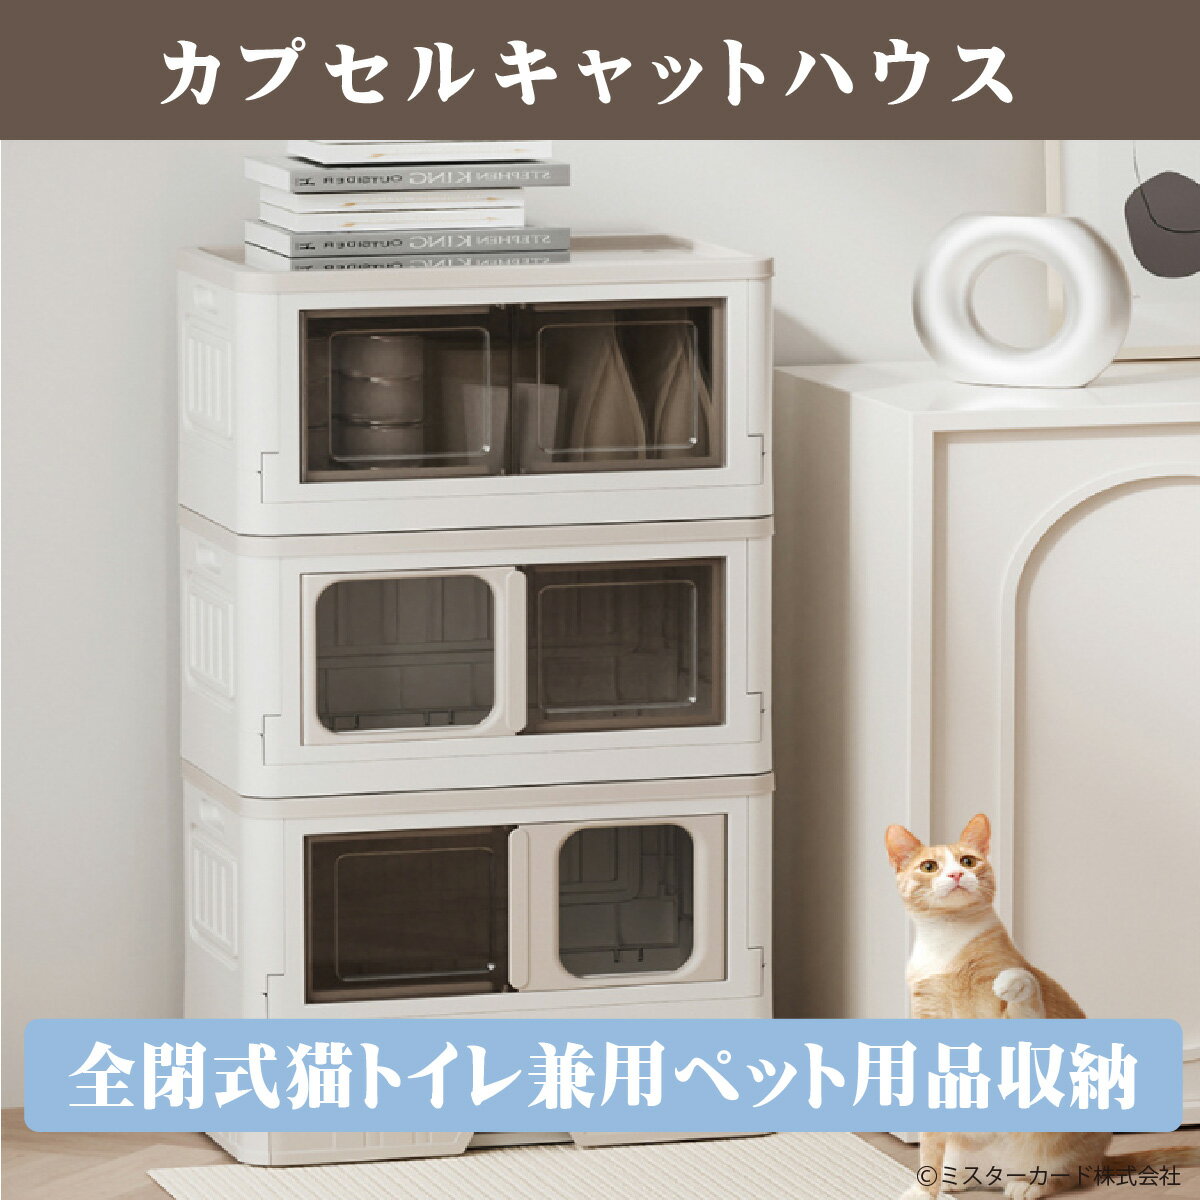 miraiON猫用トイレやベットや用品を収納できるオールインワンキャットハウス CT-PTFH1 Small SIZE(猫用ハウス・収納ボックス・猫・トイレ・アニマル・ペット用品・ギフト)